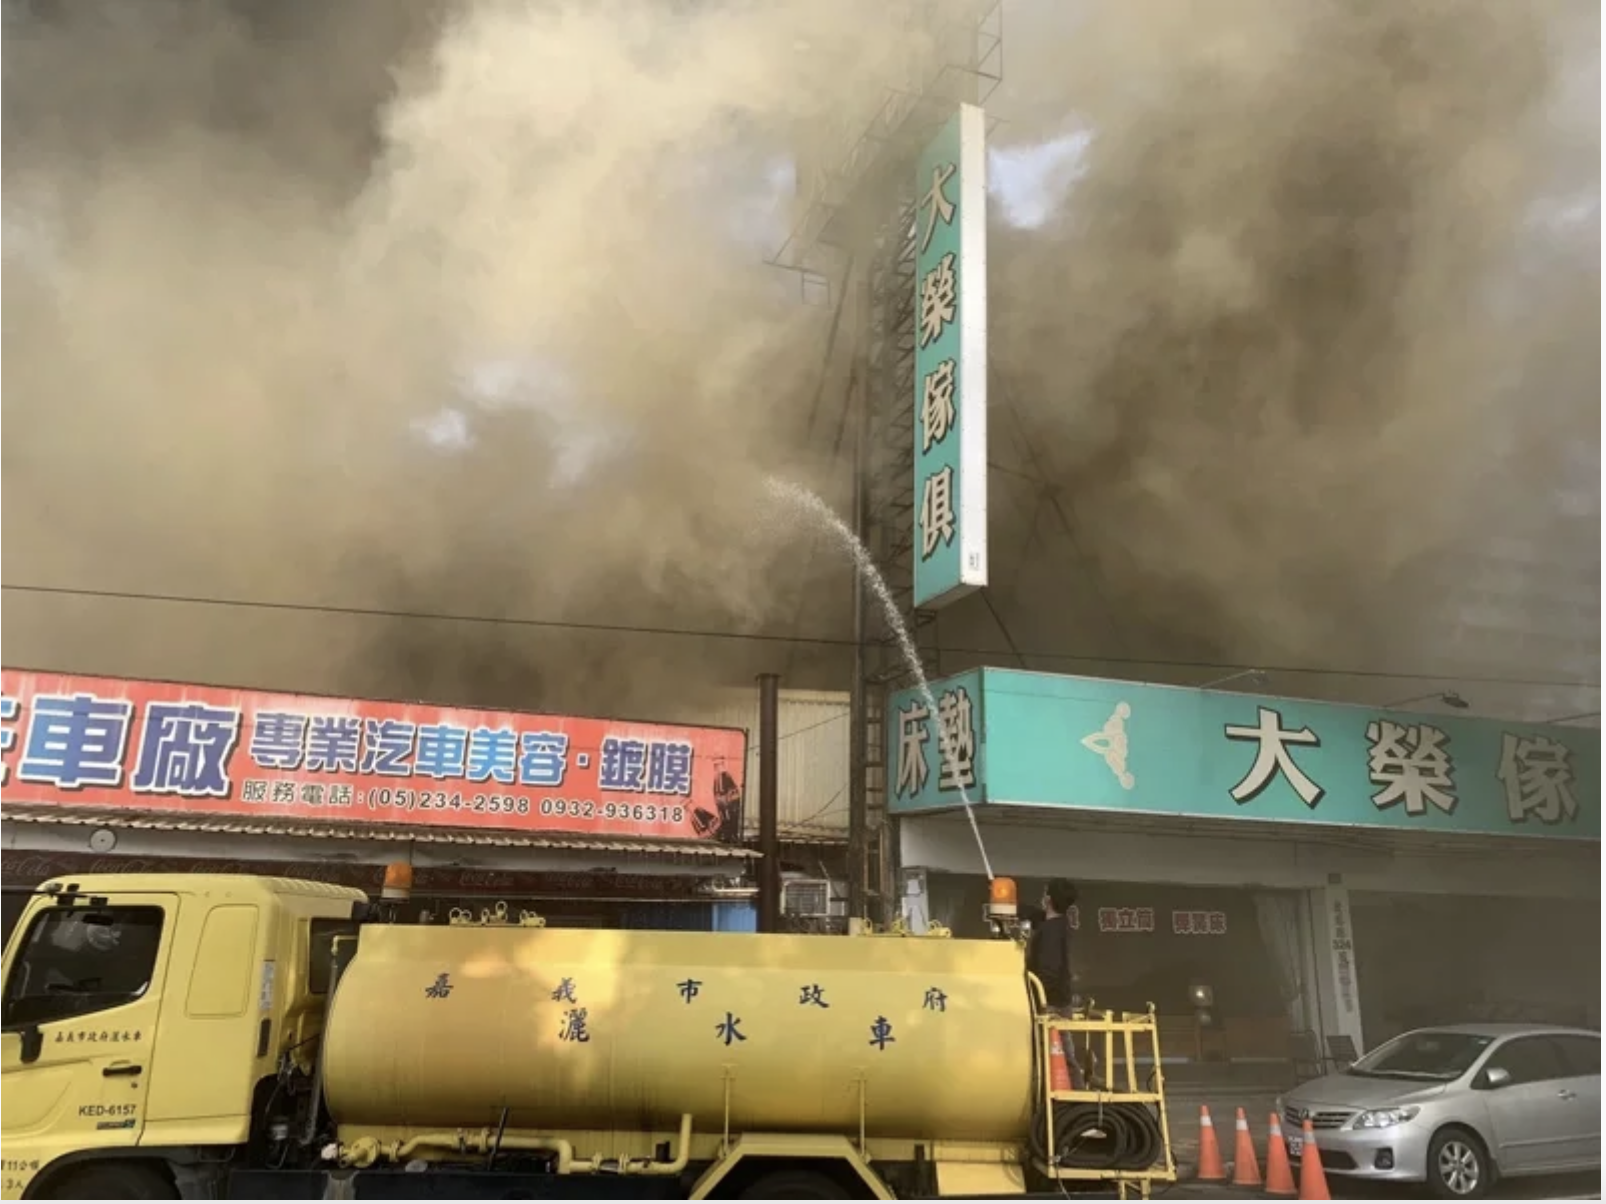 嘉市北港路家具行大火黑煙猛竄 消防到場已延燒3店